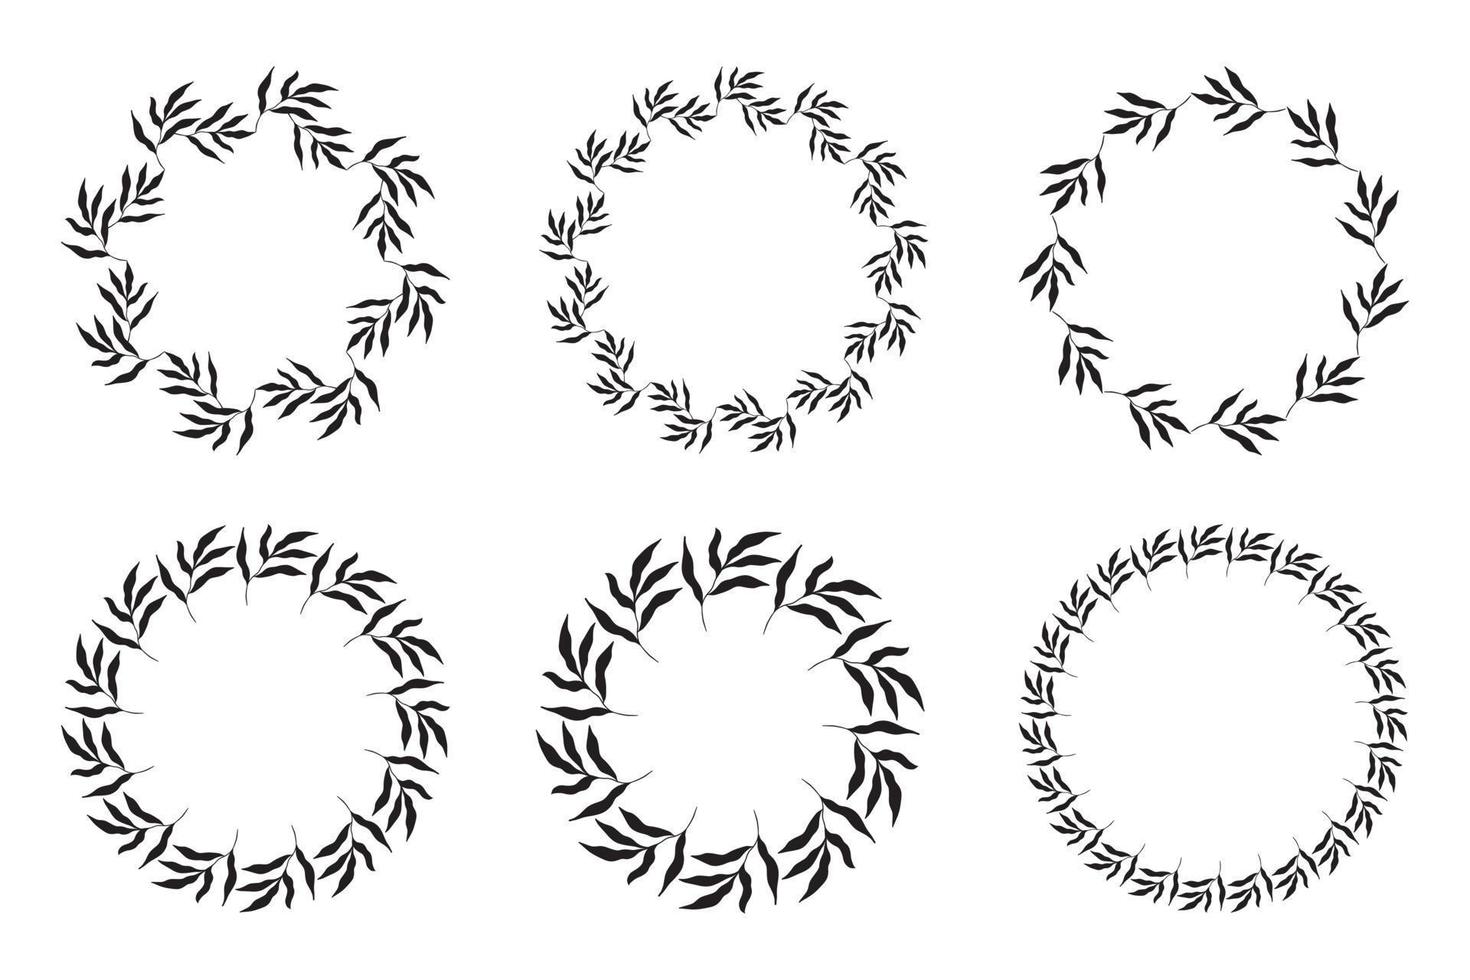 illustrazione della raccolta di cornici nere a forma di cerchio assortite fatte di piante su sfondo bianco isolato vettore